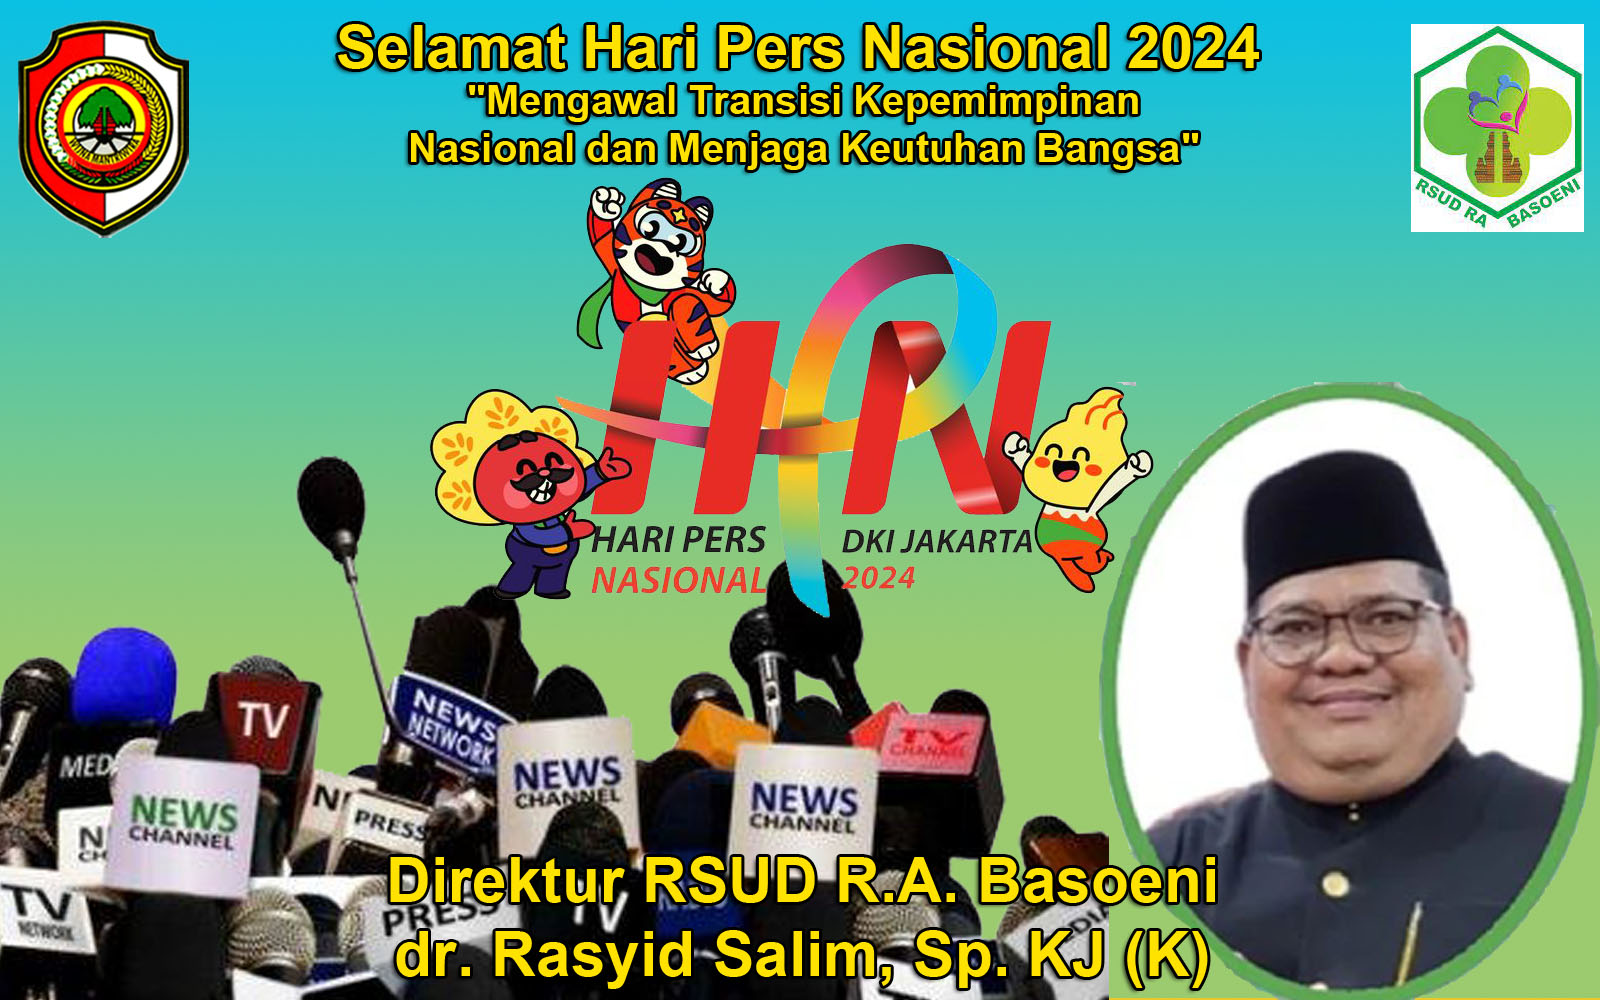 dr. Rasyid Salim, Sp. KJ (K) Direktur RSUD R.A. Basoeni Mengucapkan Selamat Hari Pers Nasional 2024